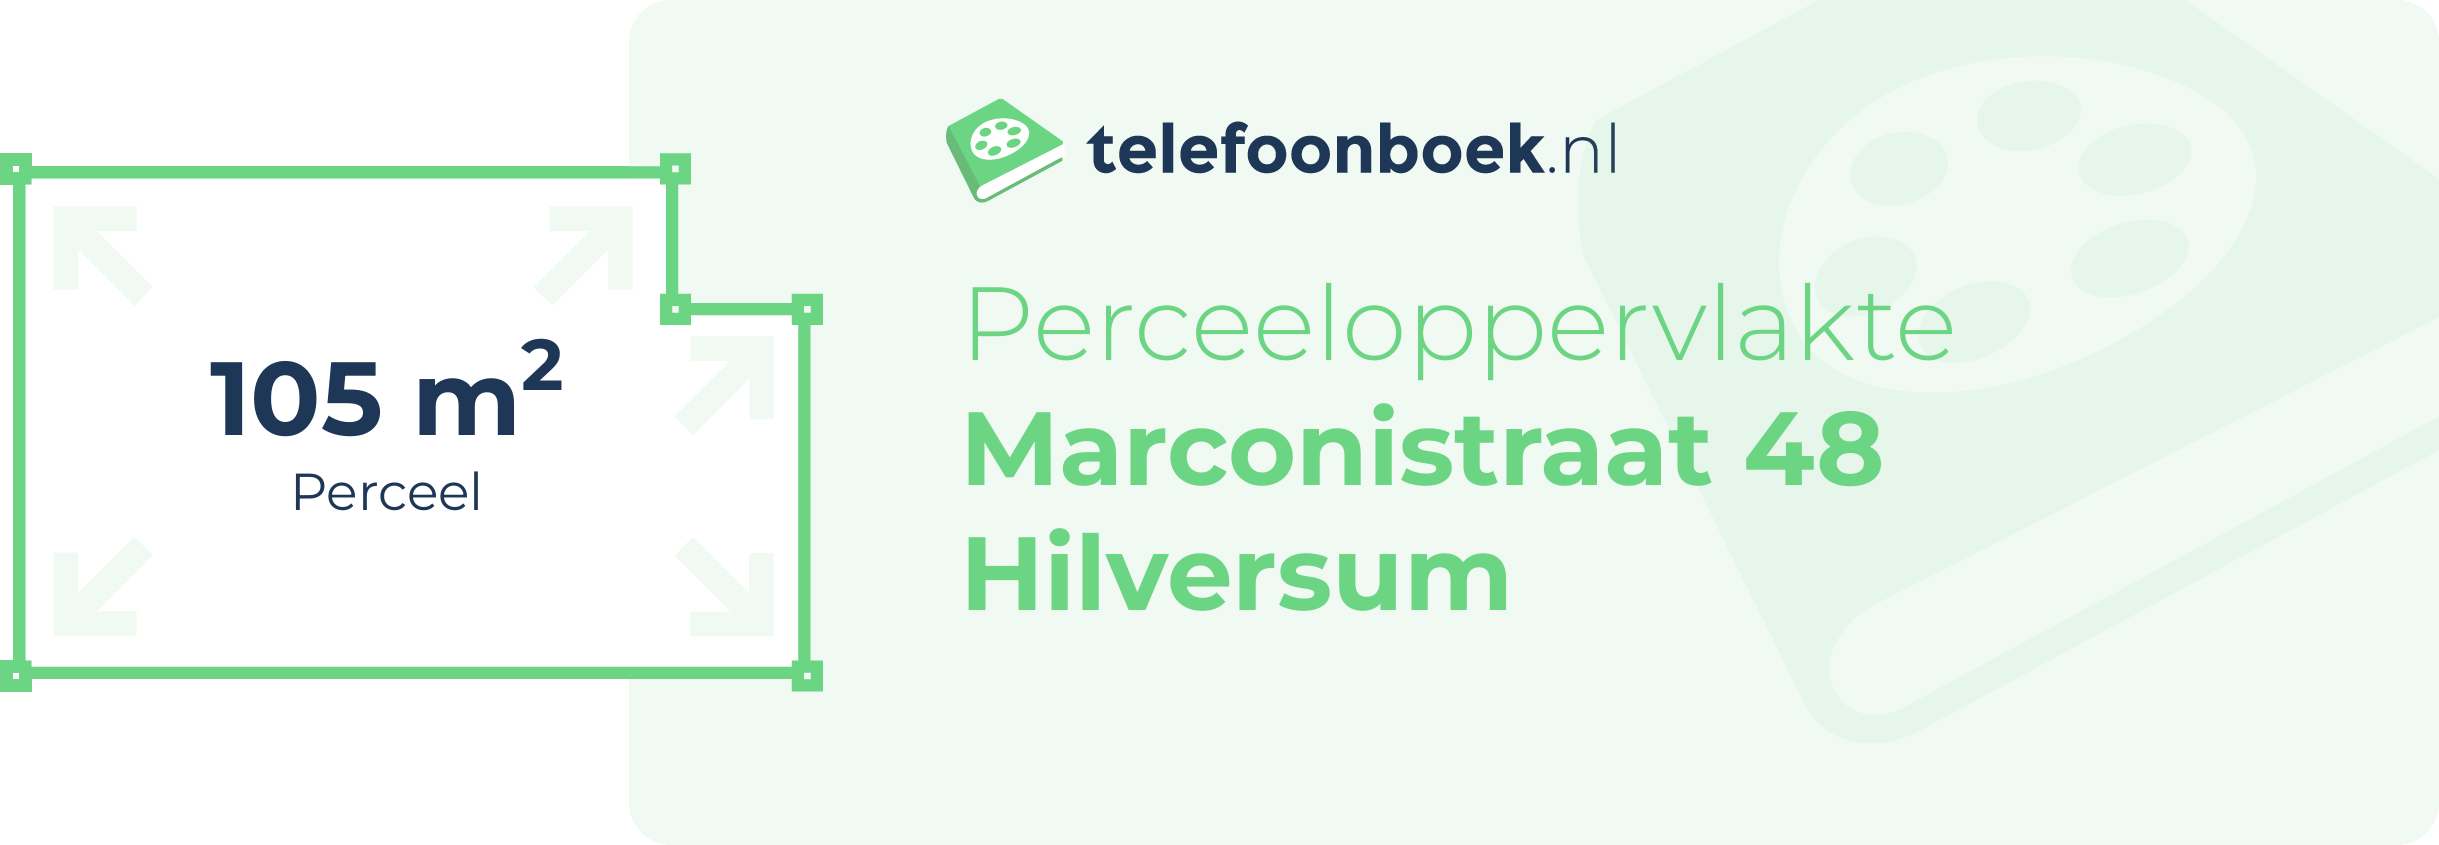 Perceeloppervlakte Marconistraat 48 Hilversum